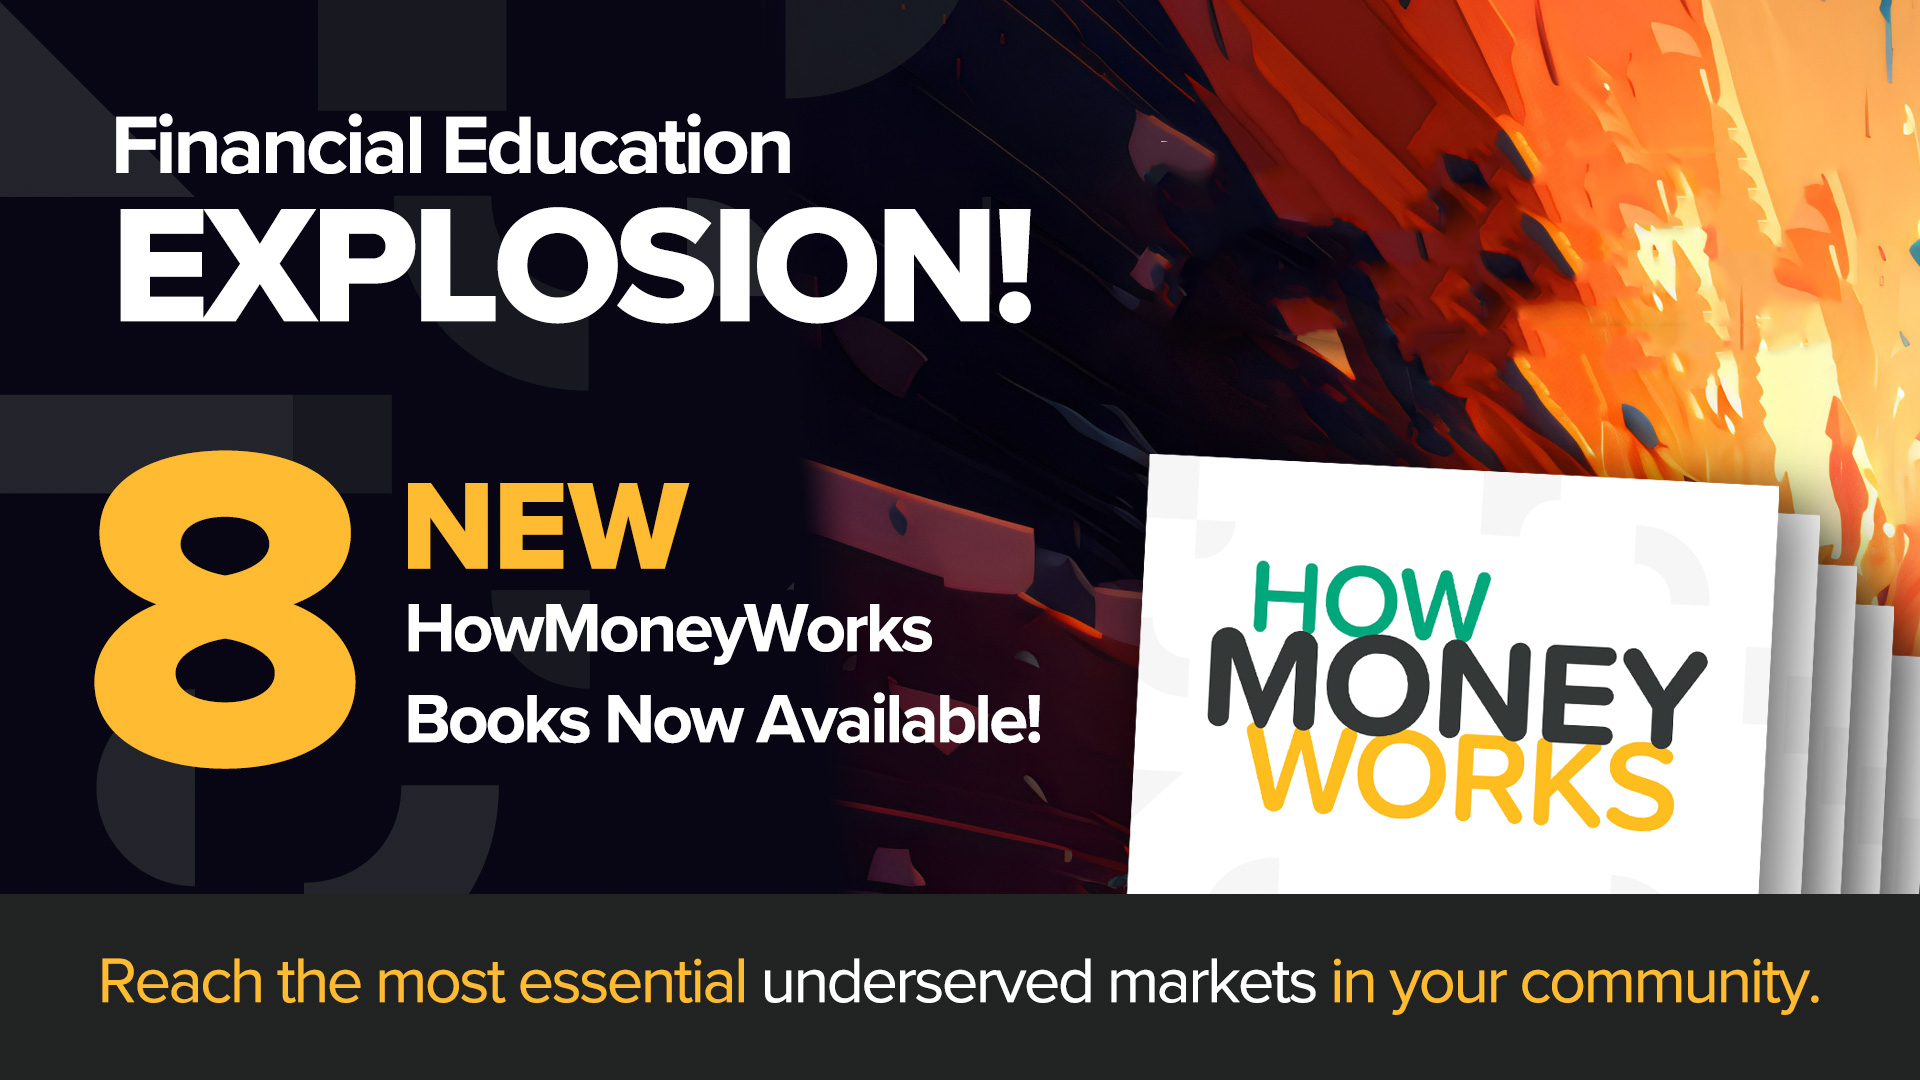 8 новых книг HowMoneyWorks - сегодня мы представляем новую разнообразную линейку книг по финансовой грамотности